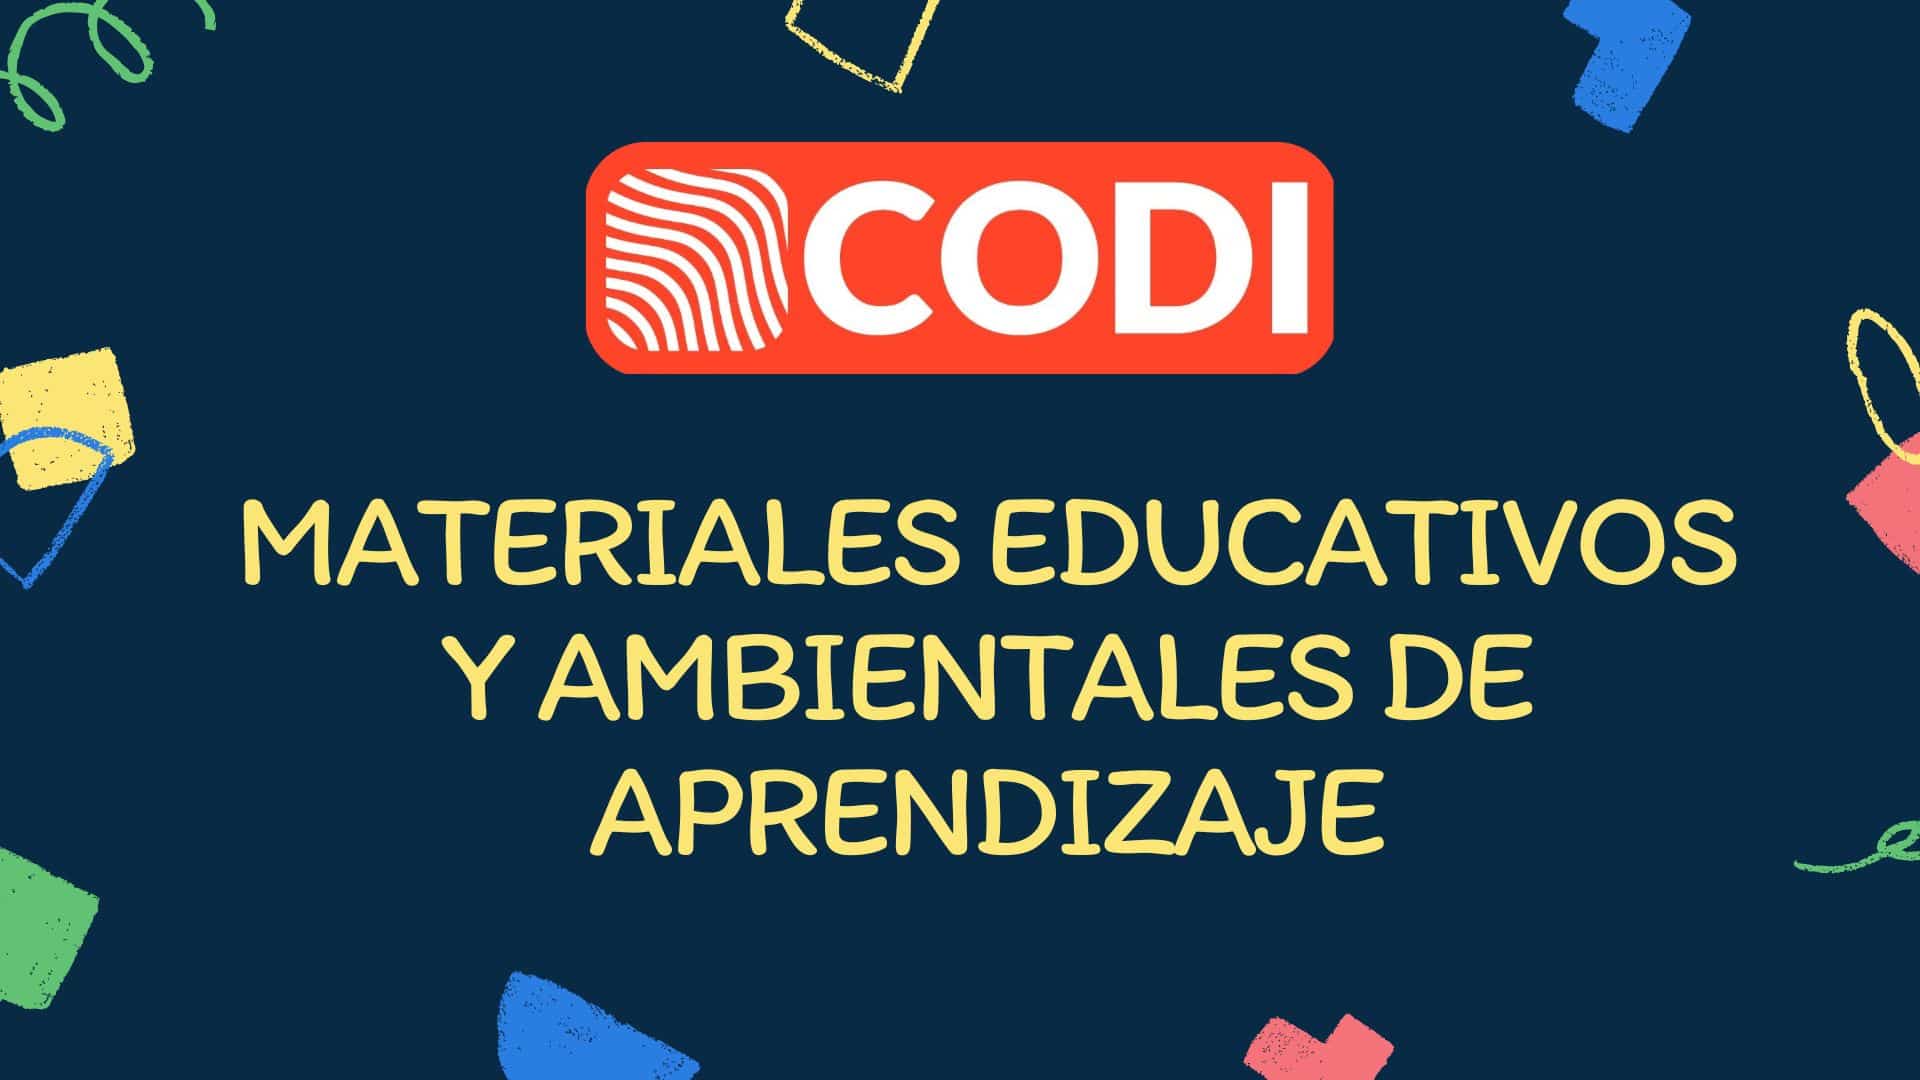 MATERIALES EDUCATIVOS Y AMBIENTALES DE APRENDIZAJE